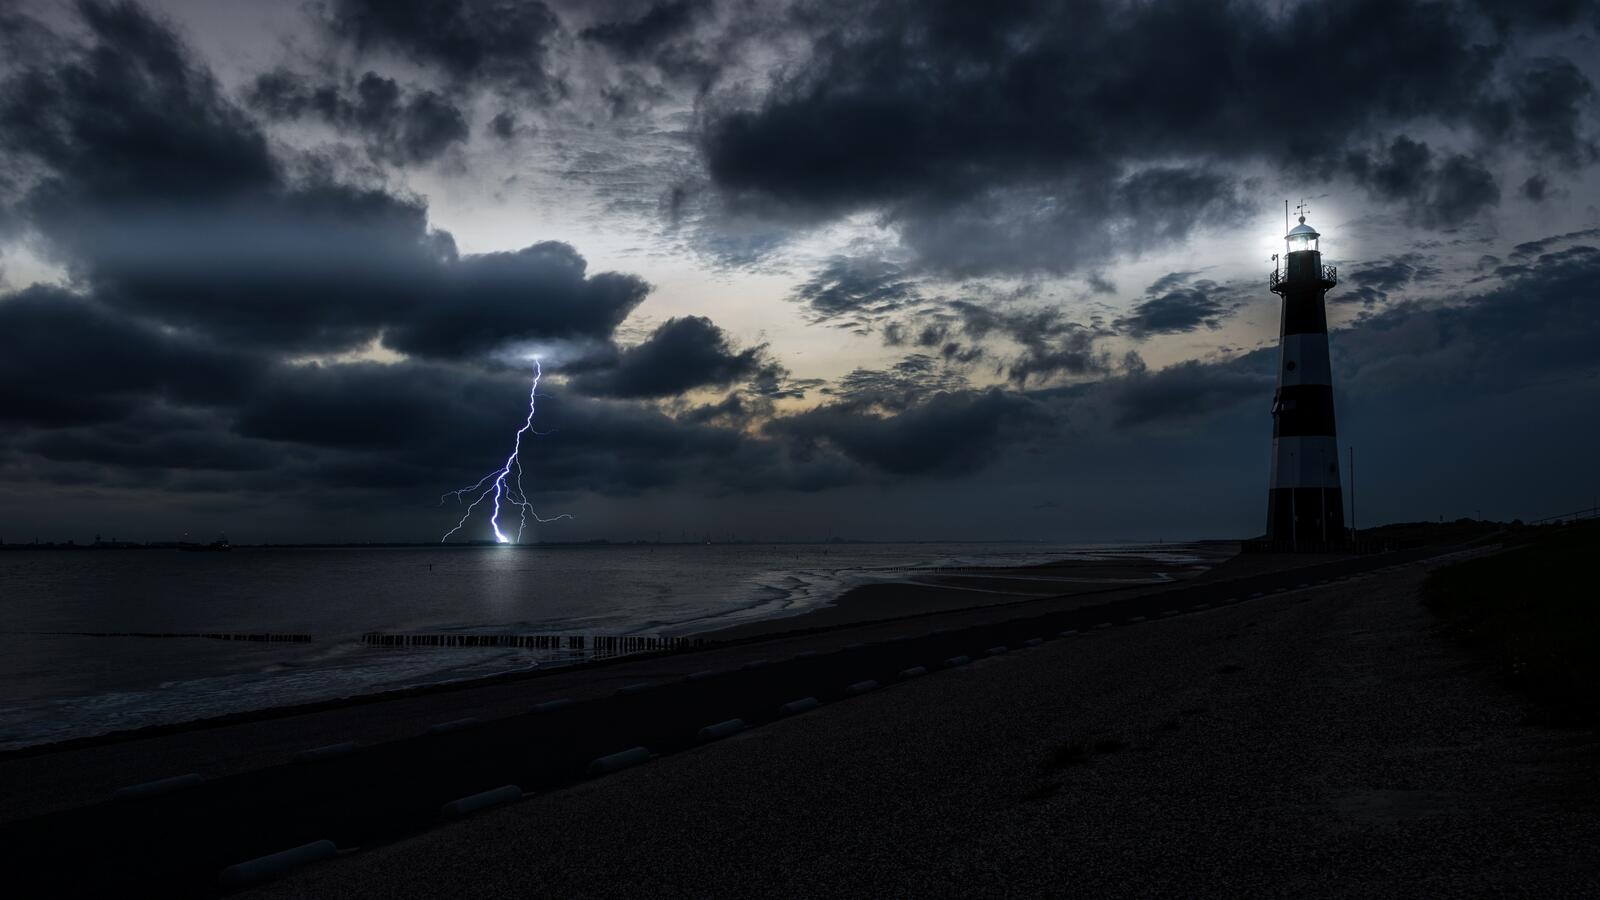 Бесплатное фото Ночная молния во время шторма рядом с маяком